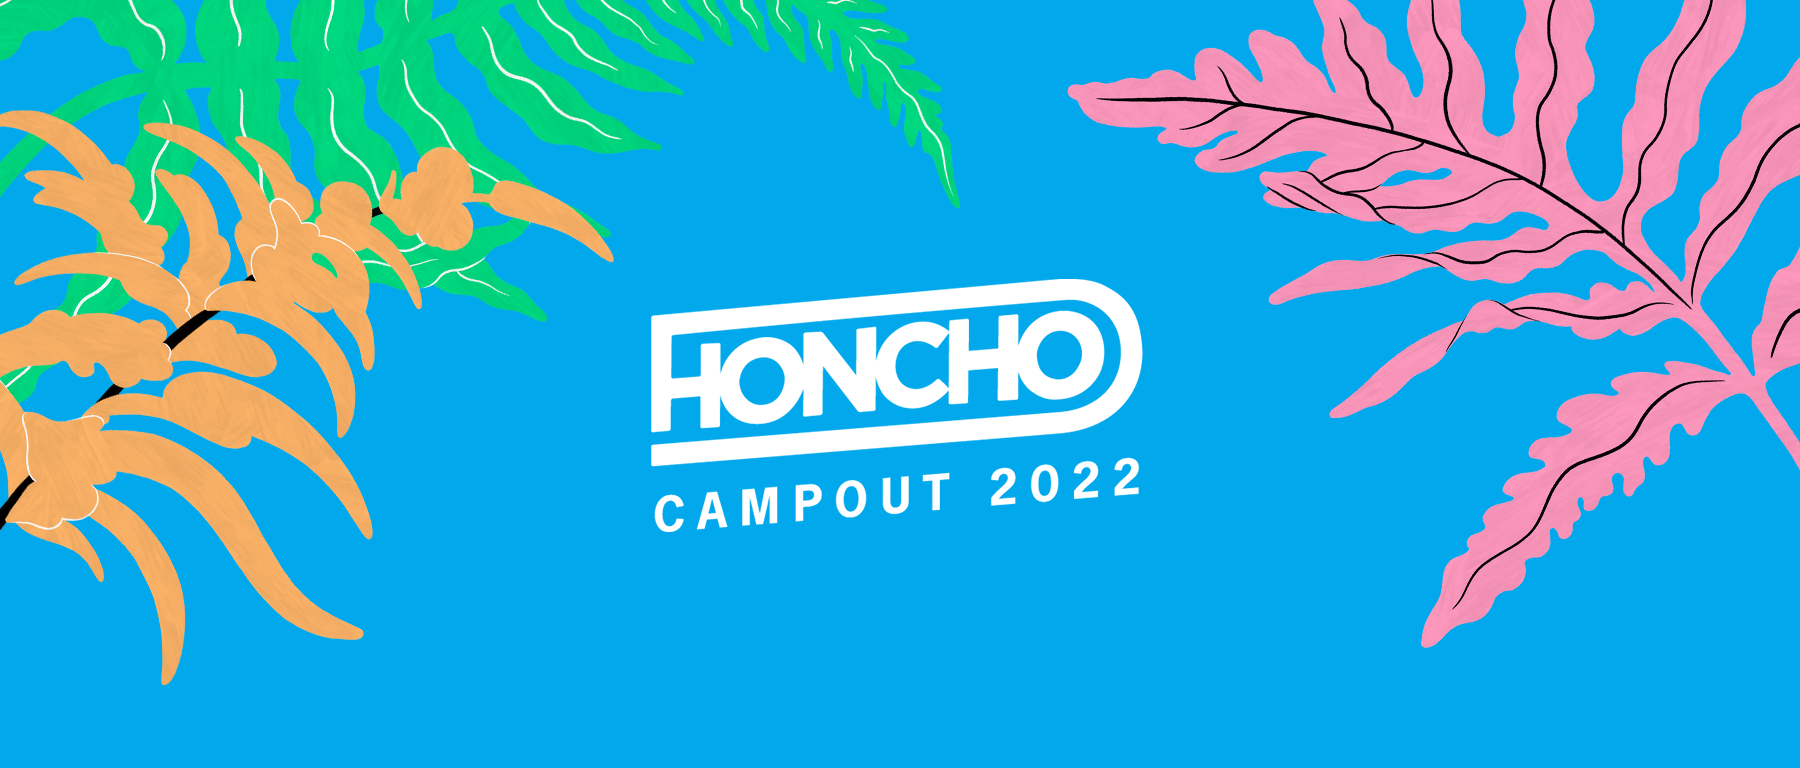 Honcho Campout 2022 - Flyer front